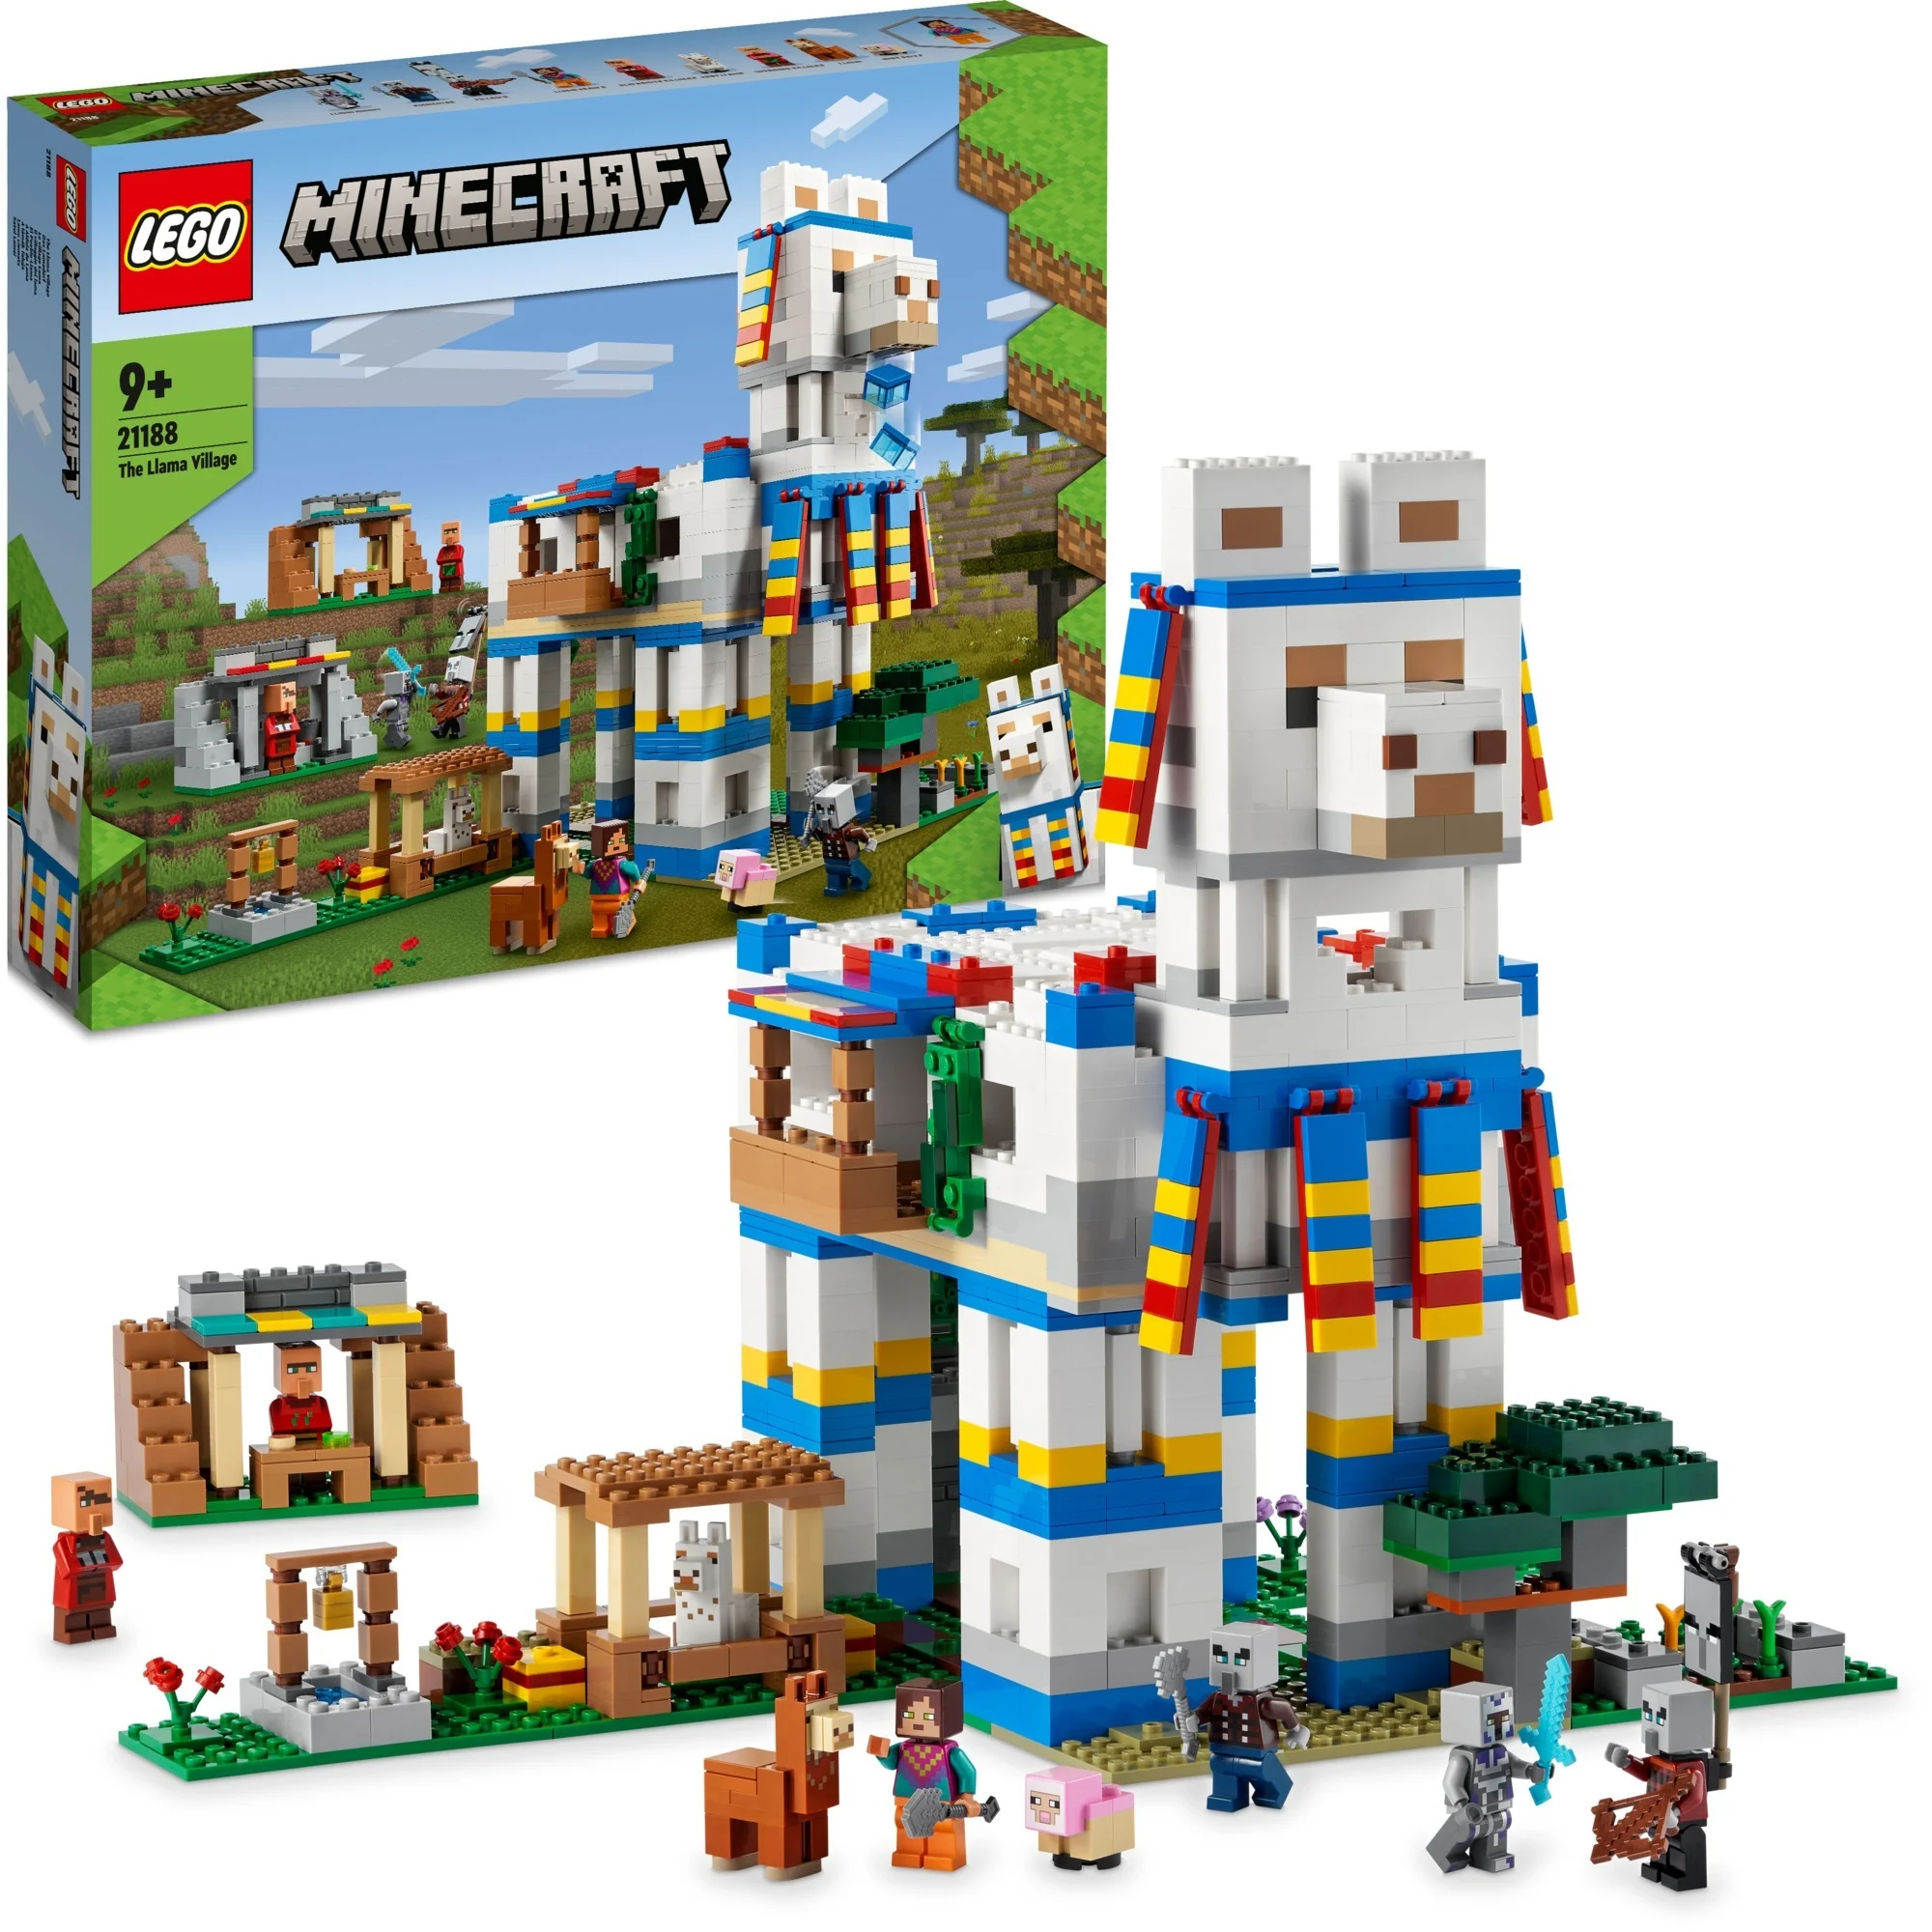 Bild zu Lego Minecraft Das Lamadorf (21188) für 79,90€ (Vergleich: 92,31€)